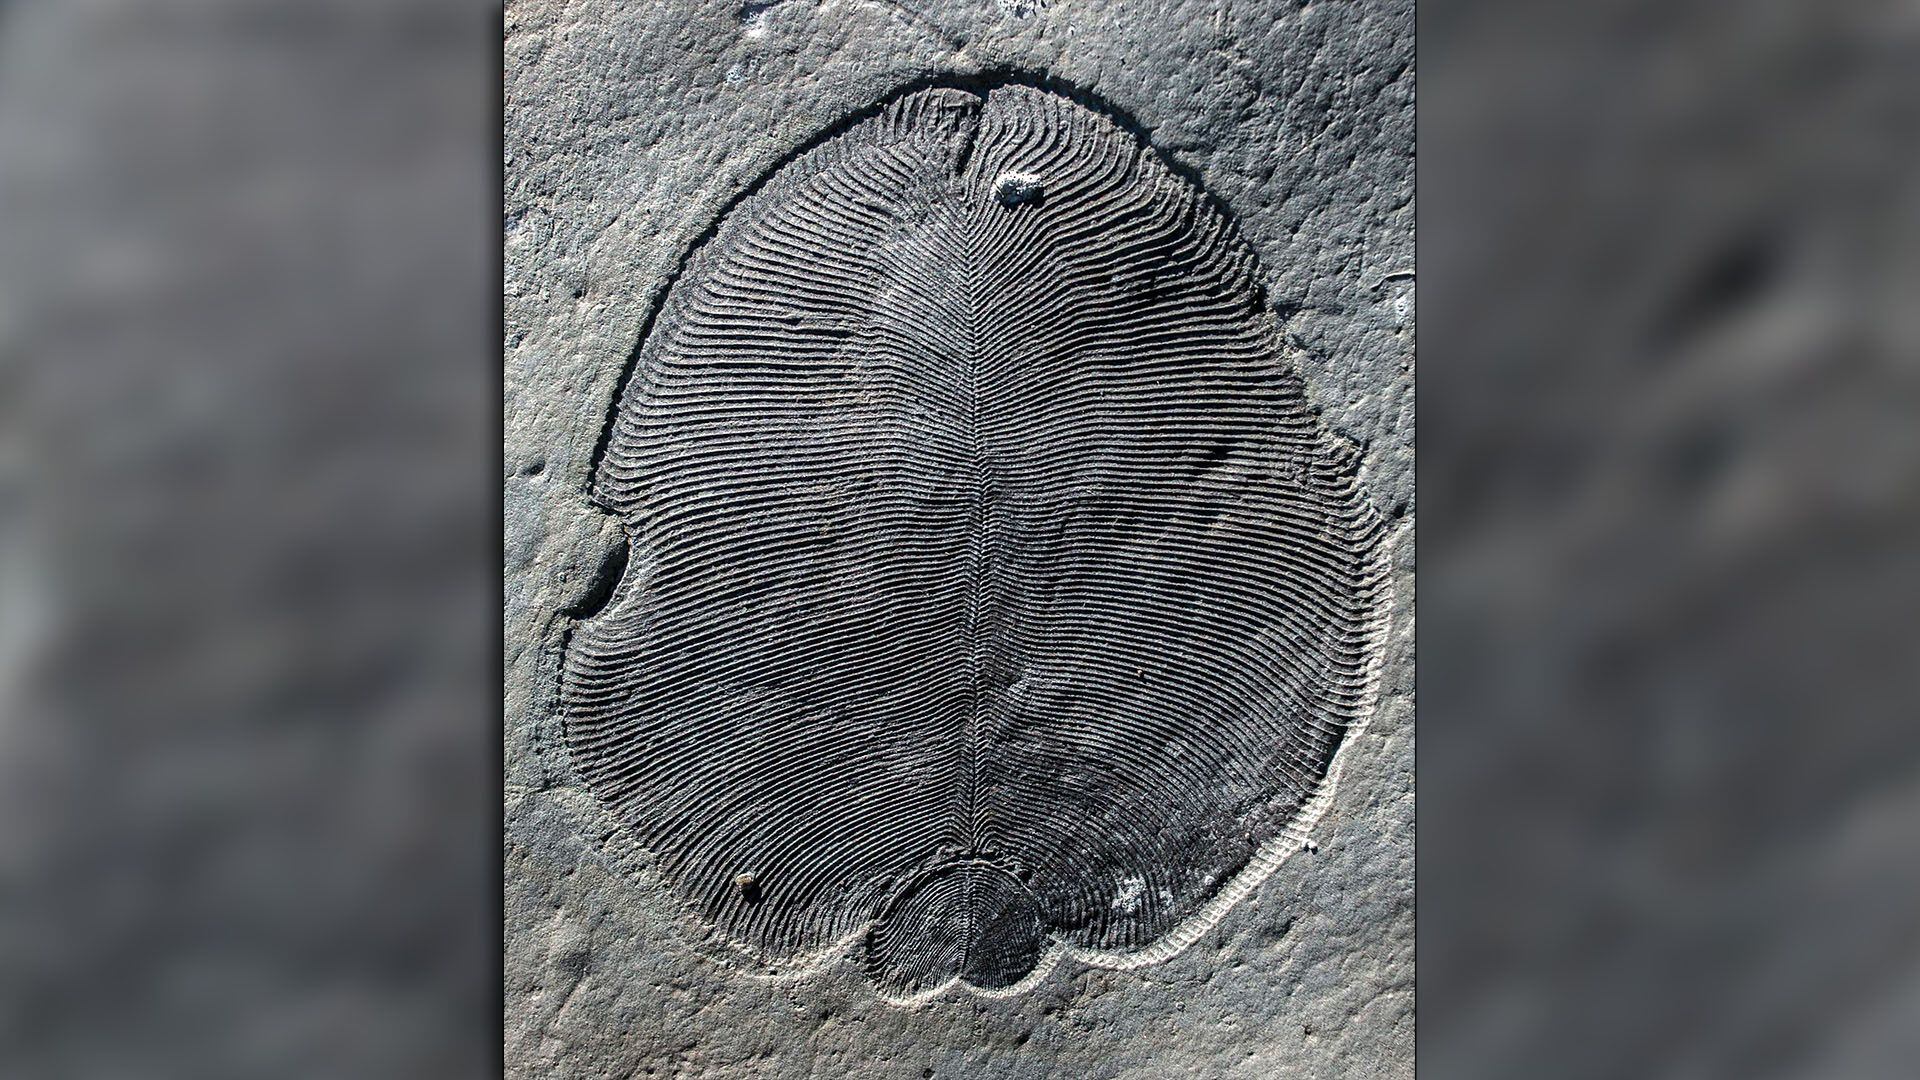 Dickinsonia el animal mas antiguo conocido de la Tierra paleontologia 1920